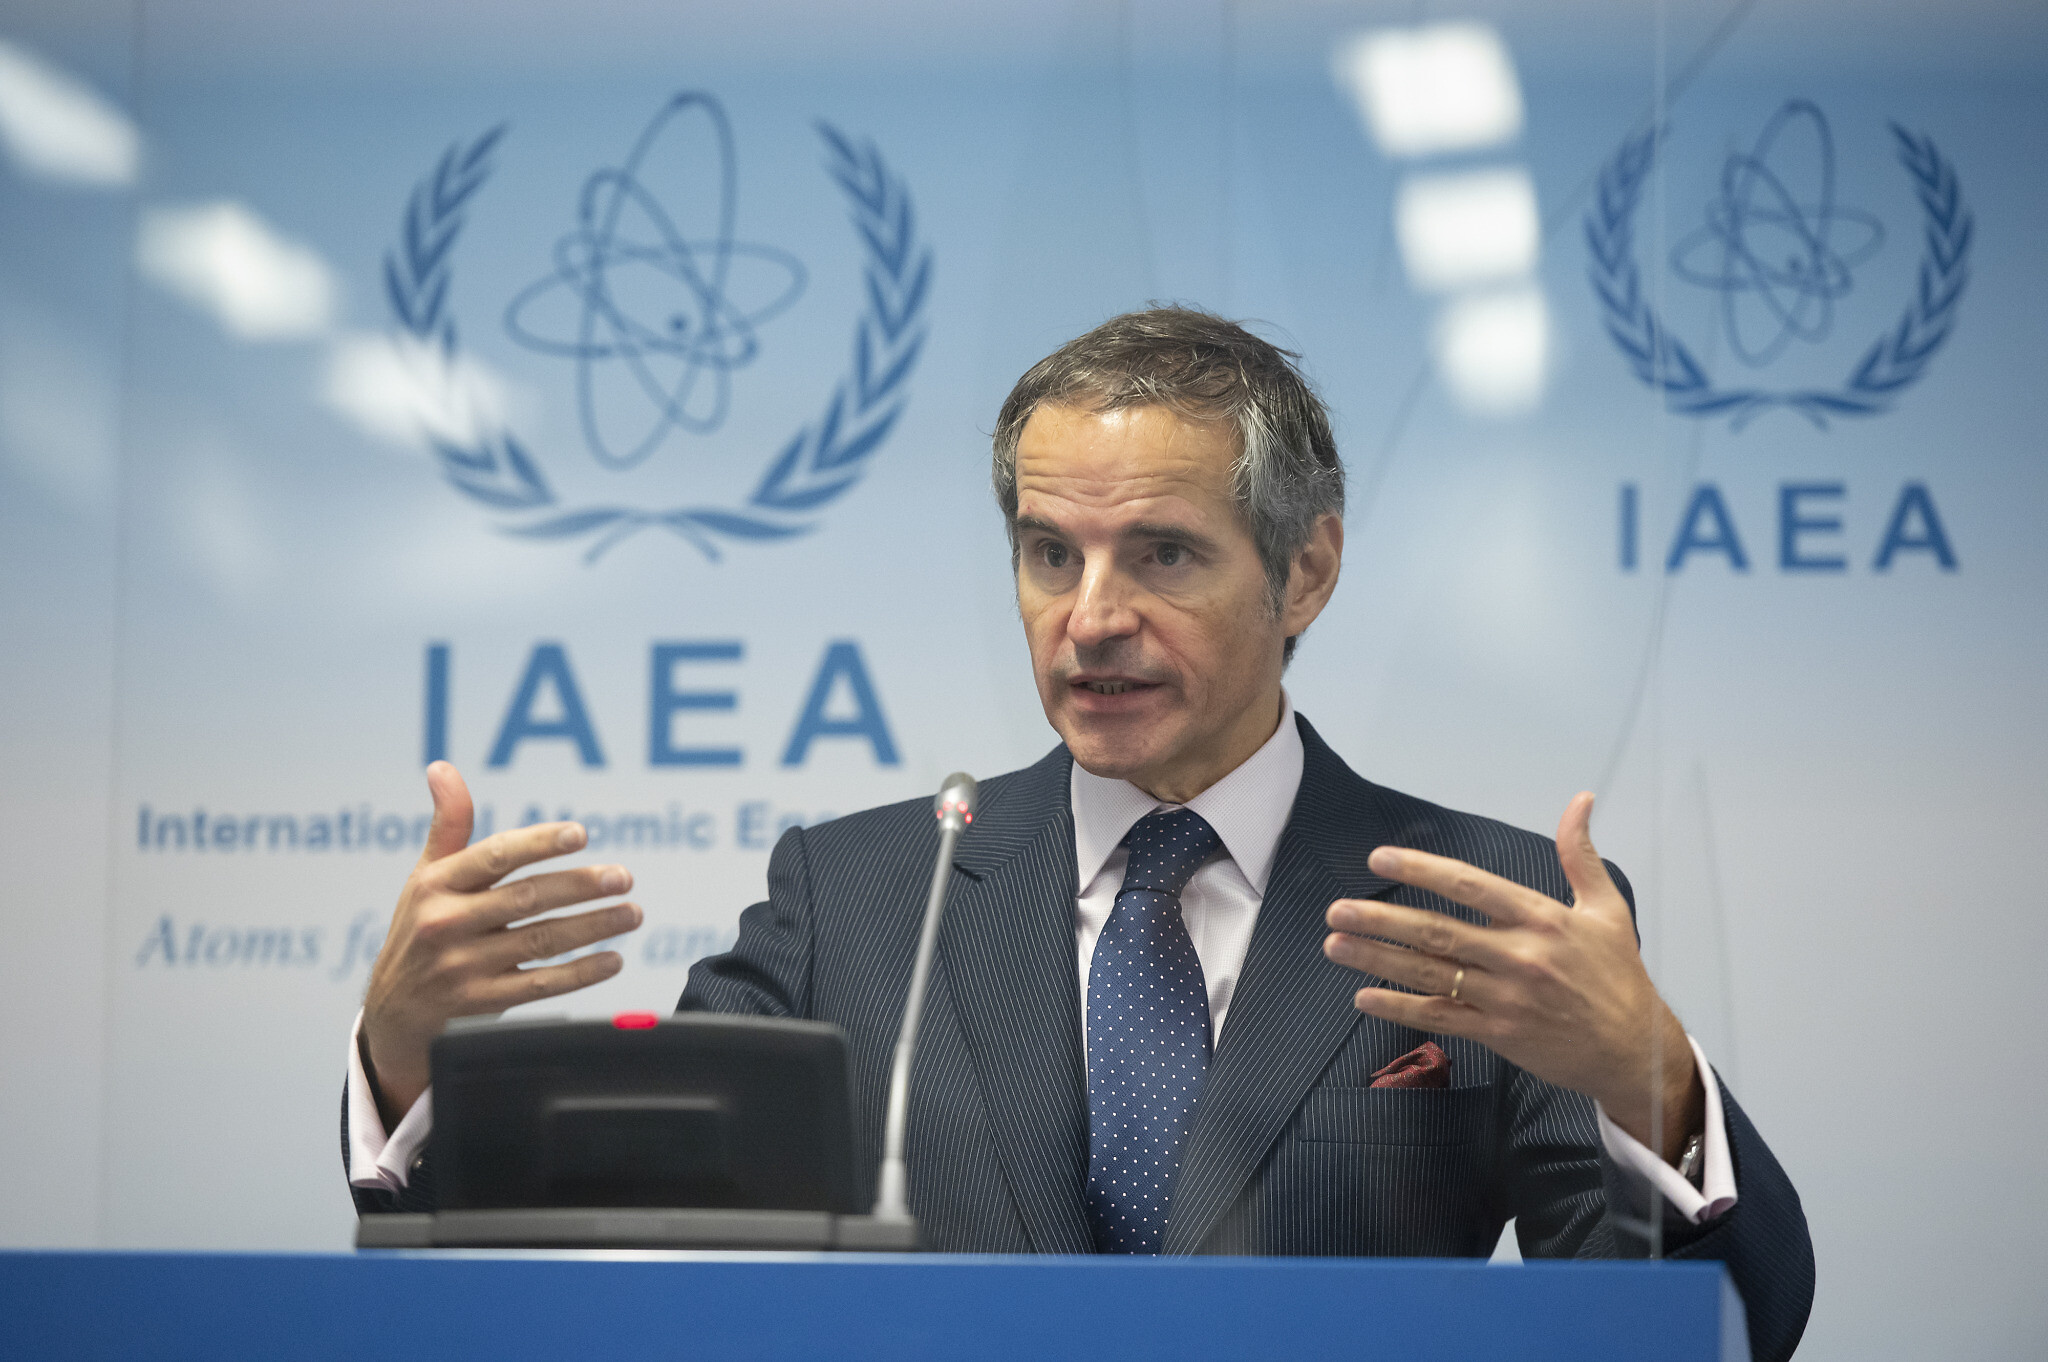  IAEA says no progress reached with Iran